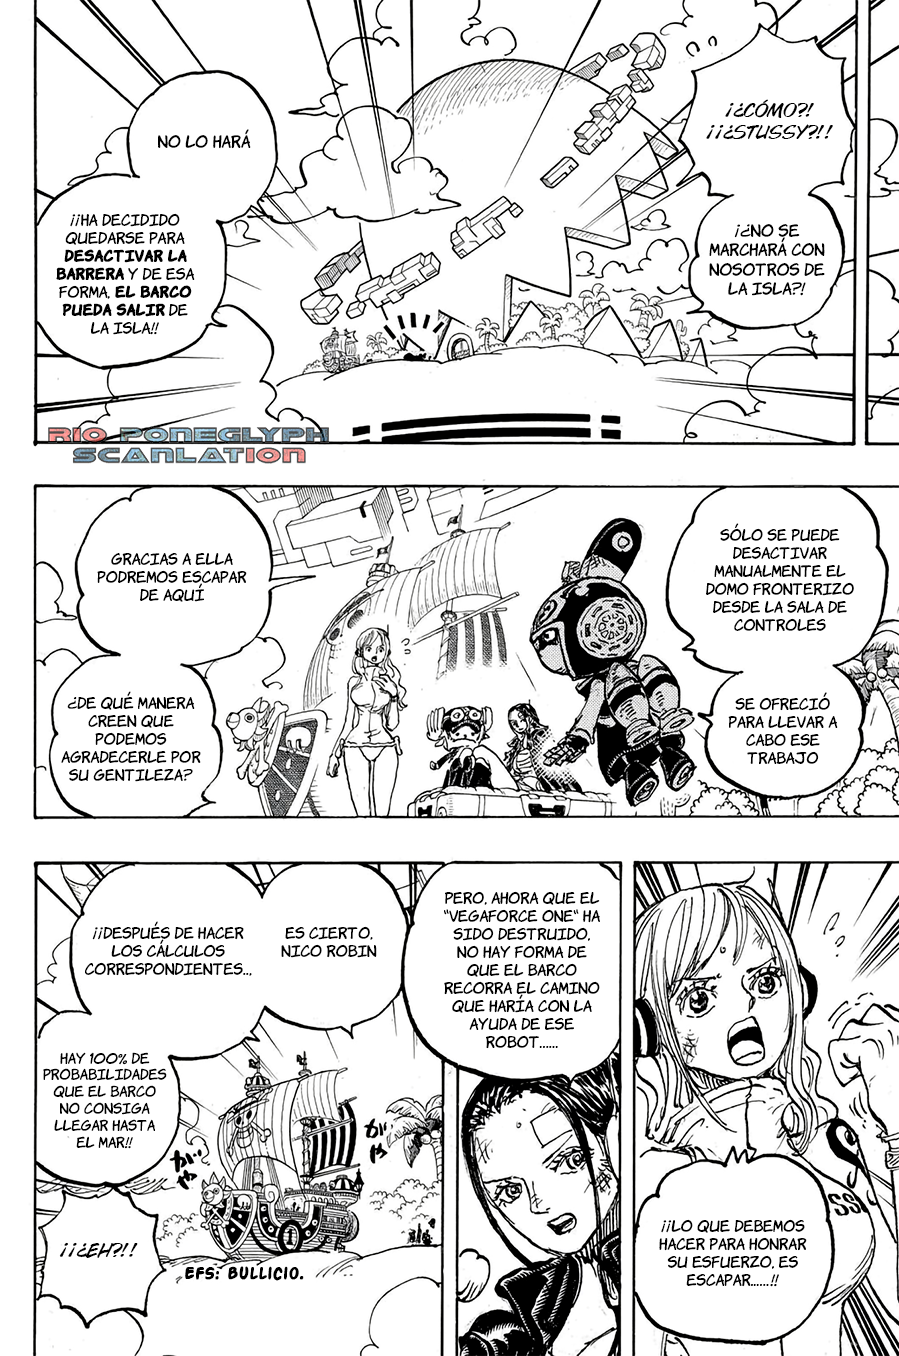 español - One Piece Manga 1112 [Español] [Rio Poneglyph Scans] 09-2